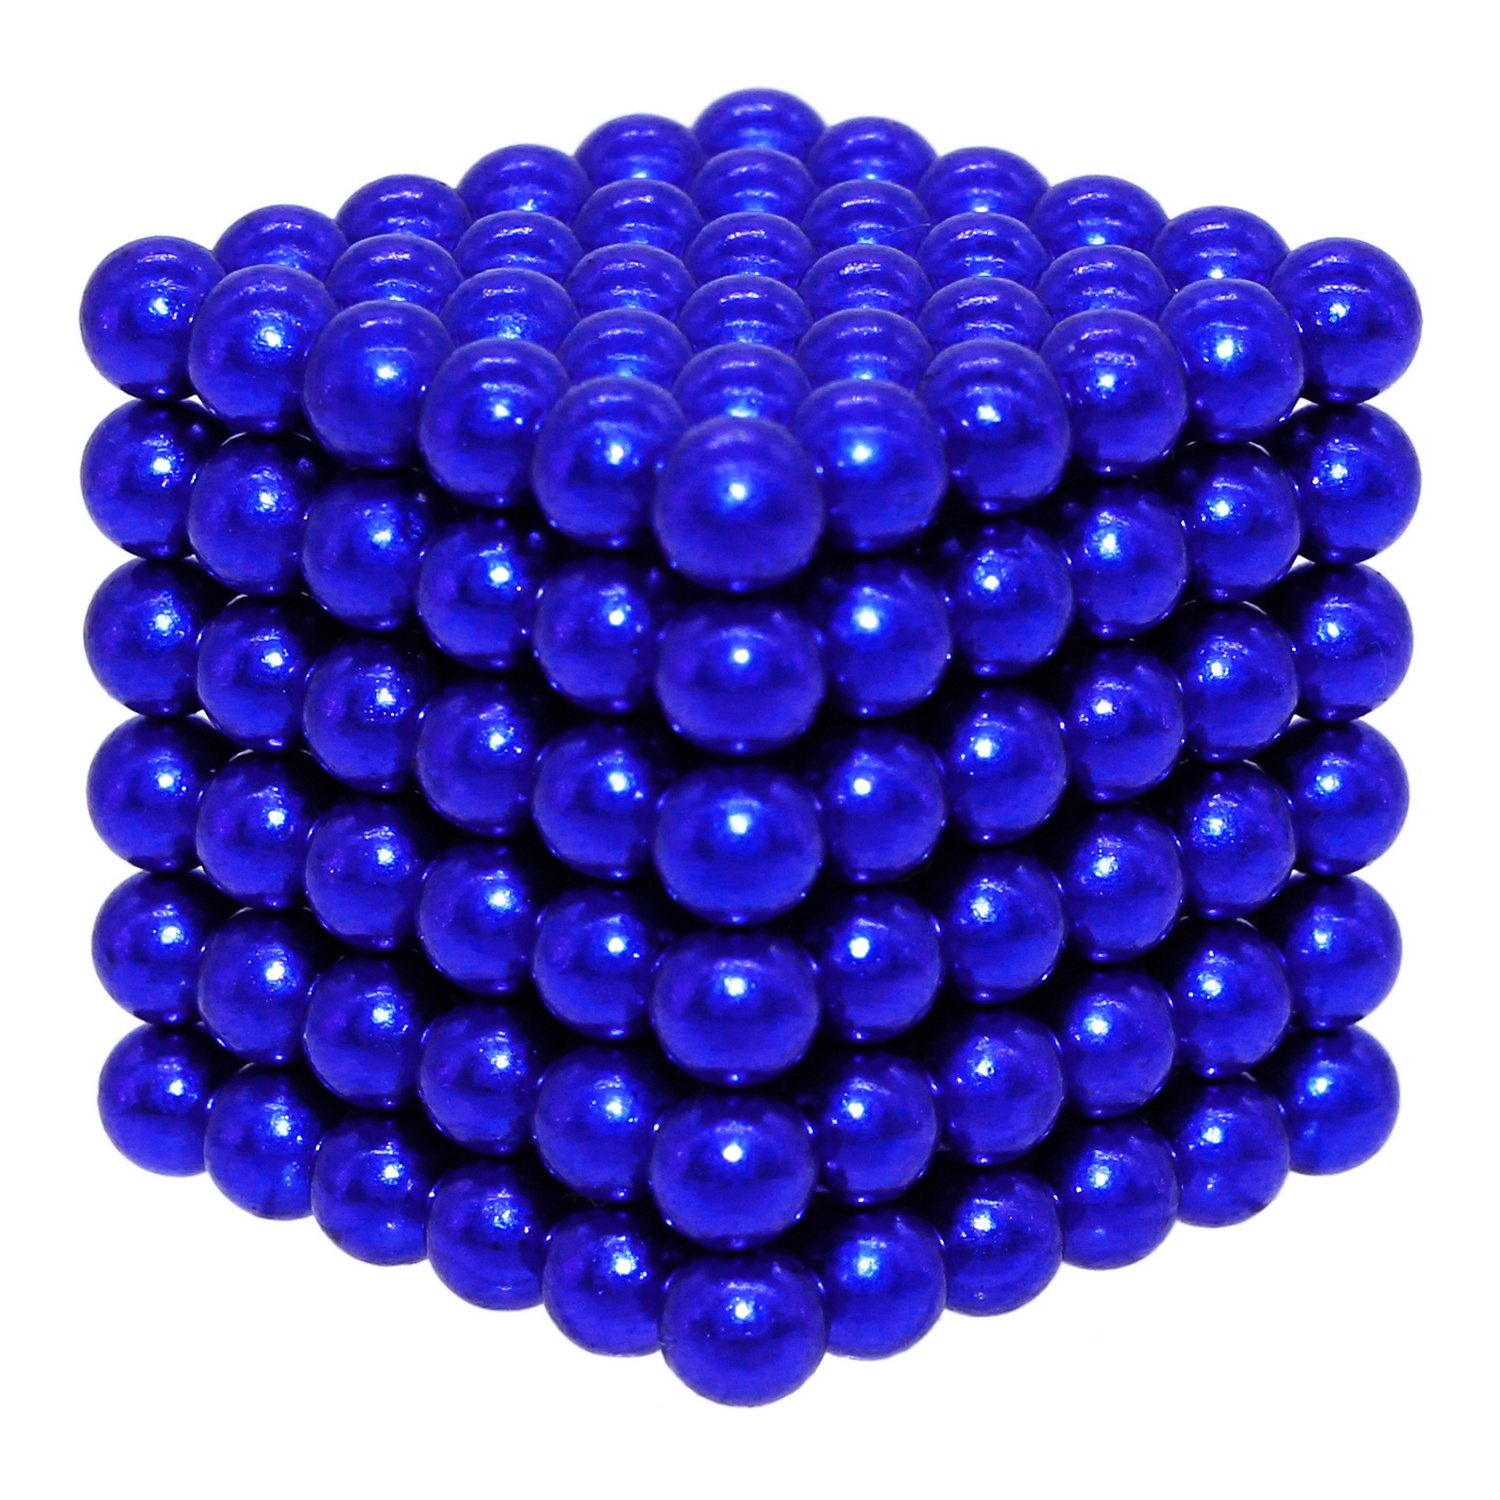 Головоломка магнитная Magnetic Cube синий неокуб 216 элементов - фото 6